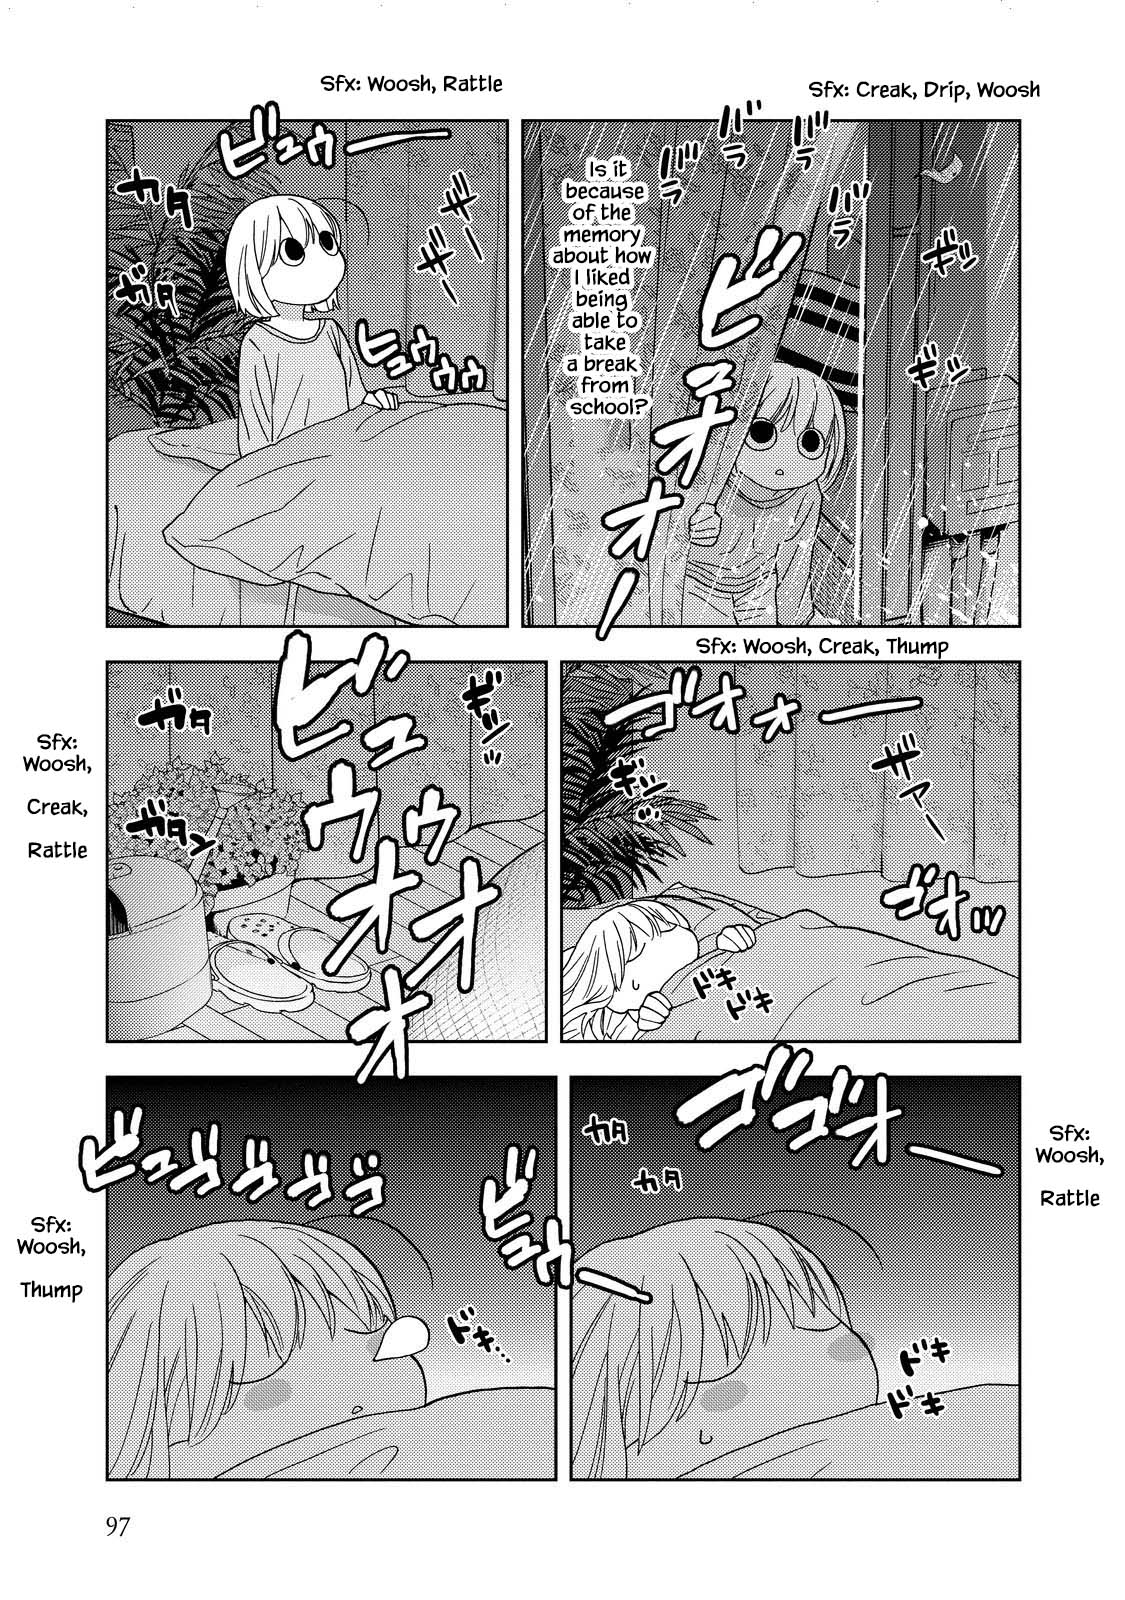 Takako-San - 23 page 7-959af225